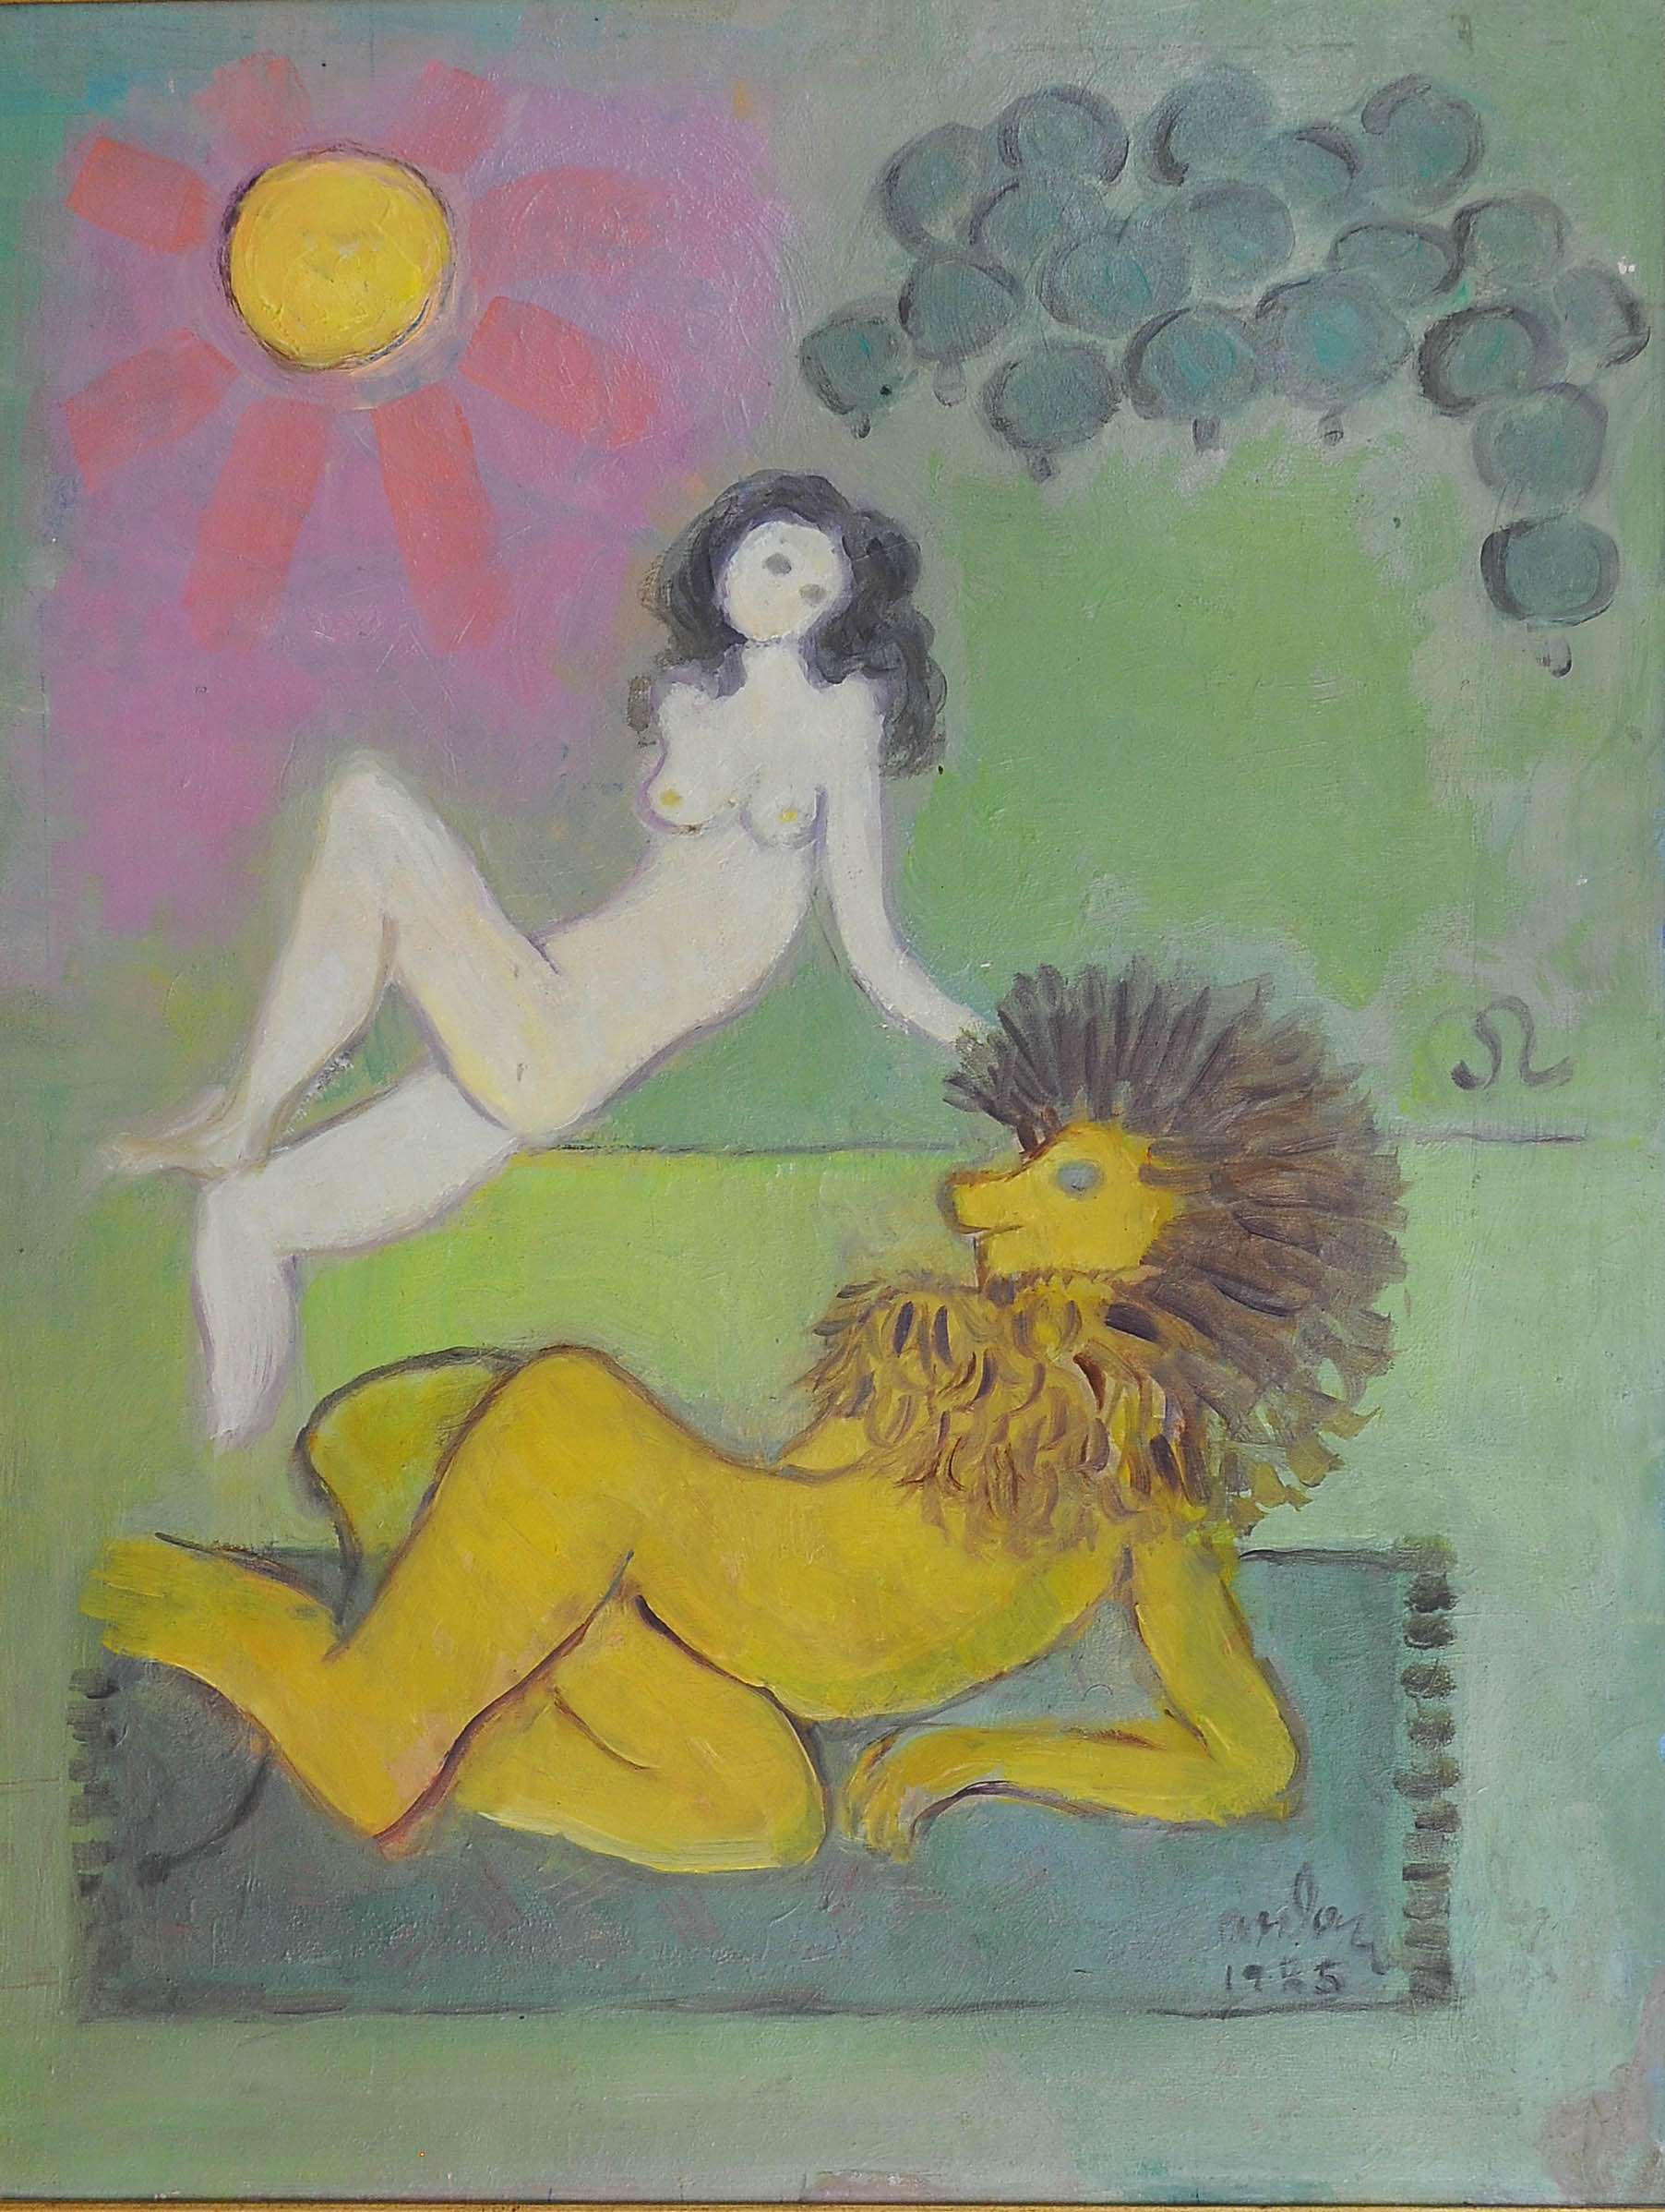  İsimsiz- Untitled, 1985, Duralit üzerine yağlıboya, Oil on durelite,  65X50  cm